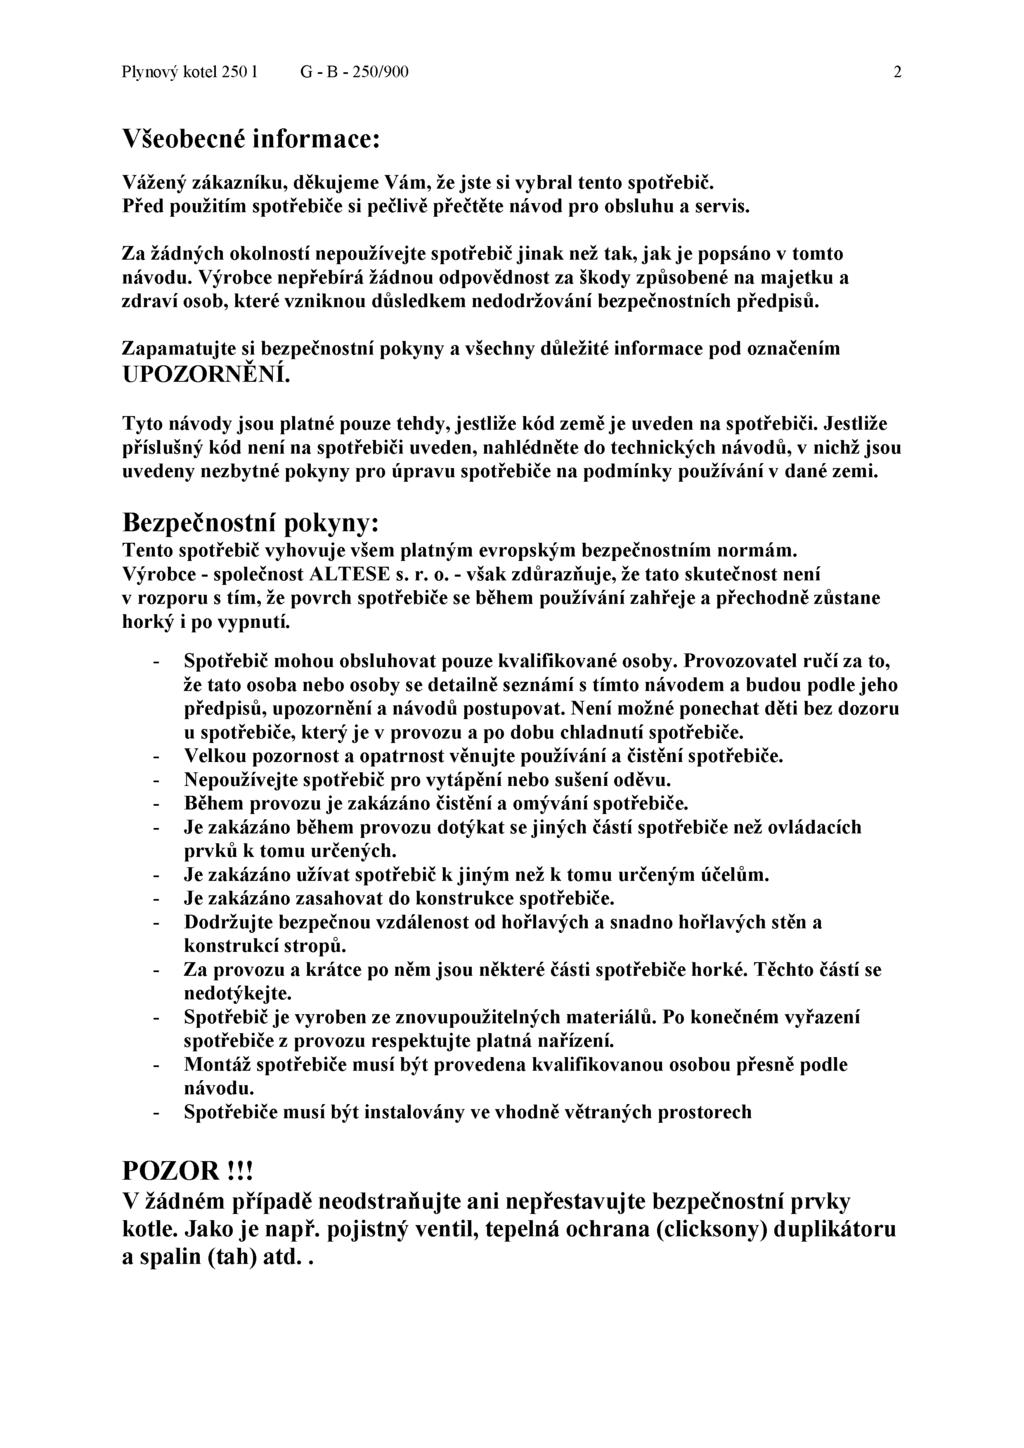 Návod pro obsluhu a servis - PDF Stažení zdarma